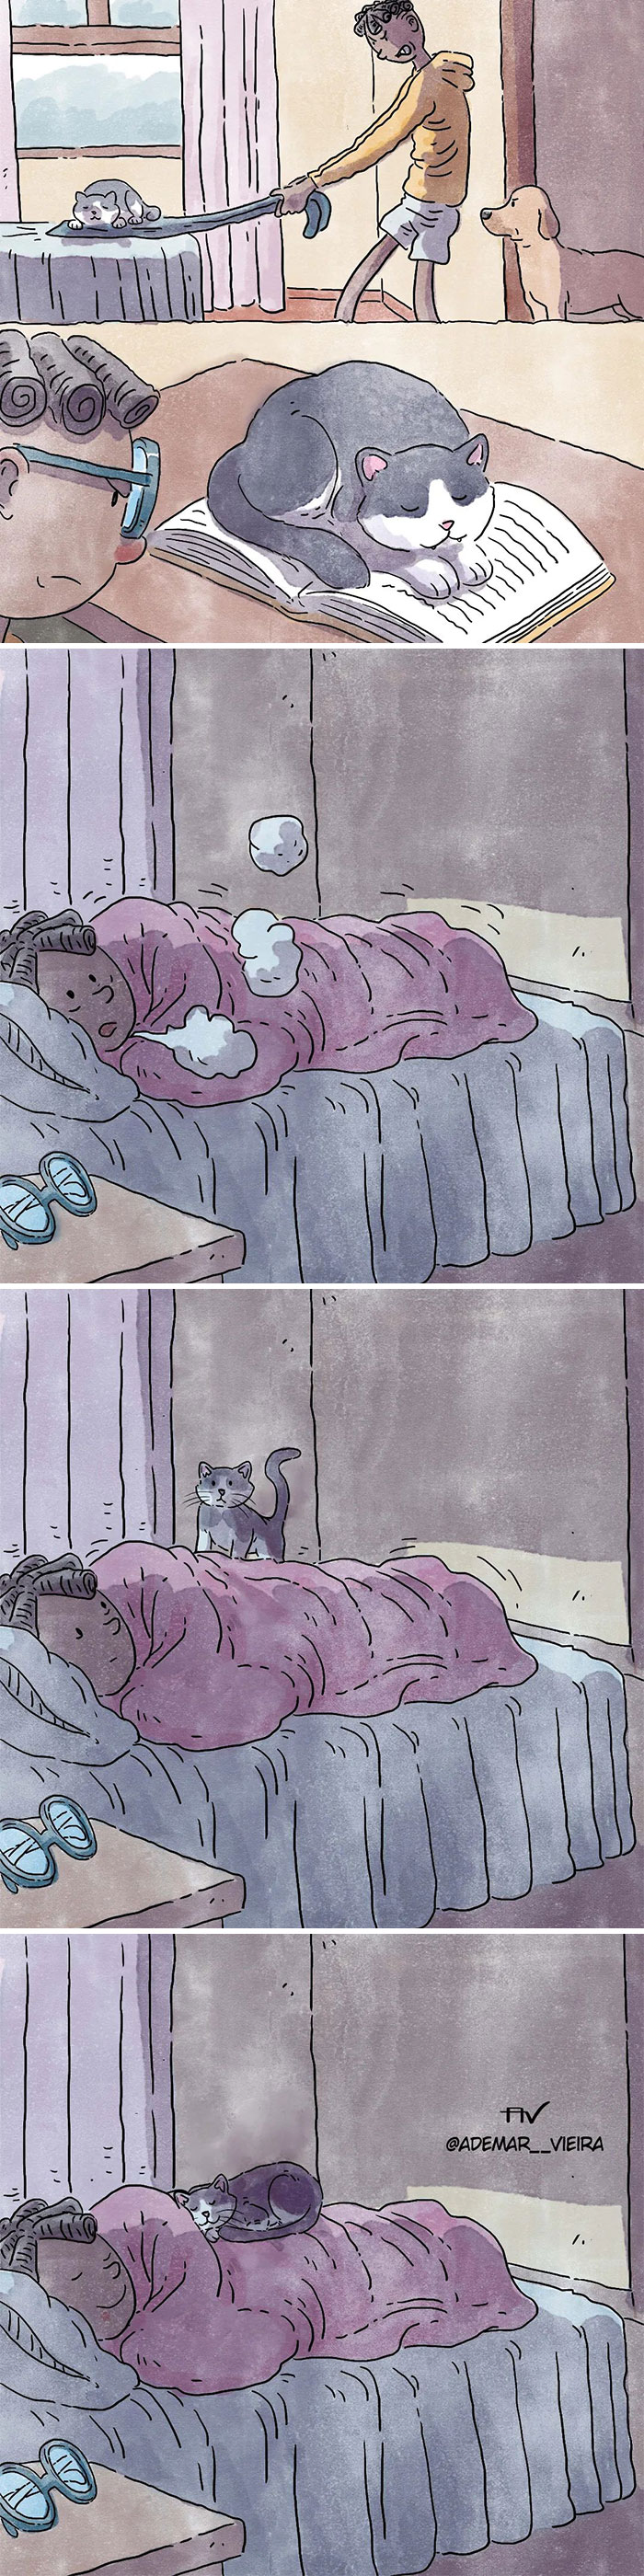 5 Emotivos cómics sobre la vida con un perro y un gato, por Ademar Vieira